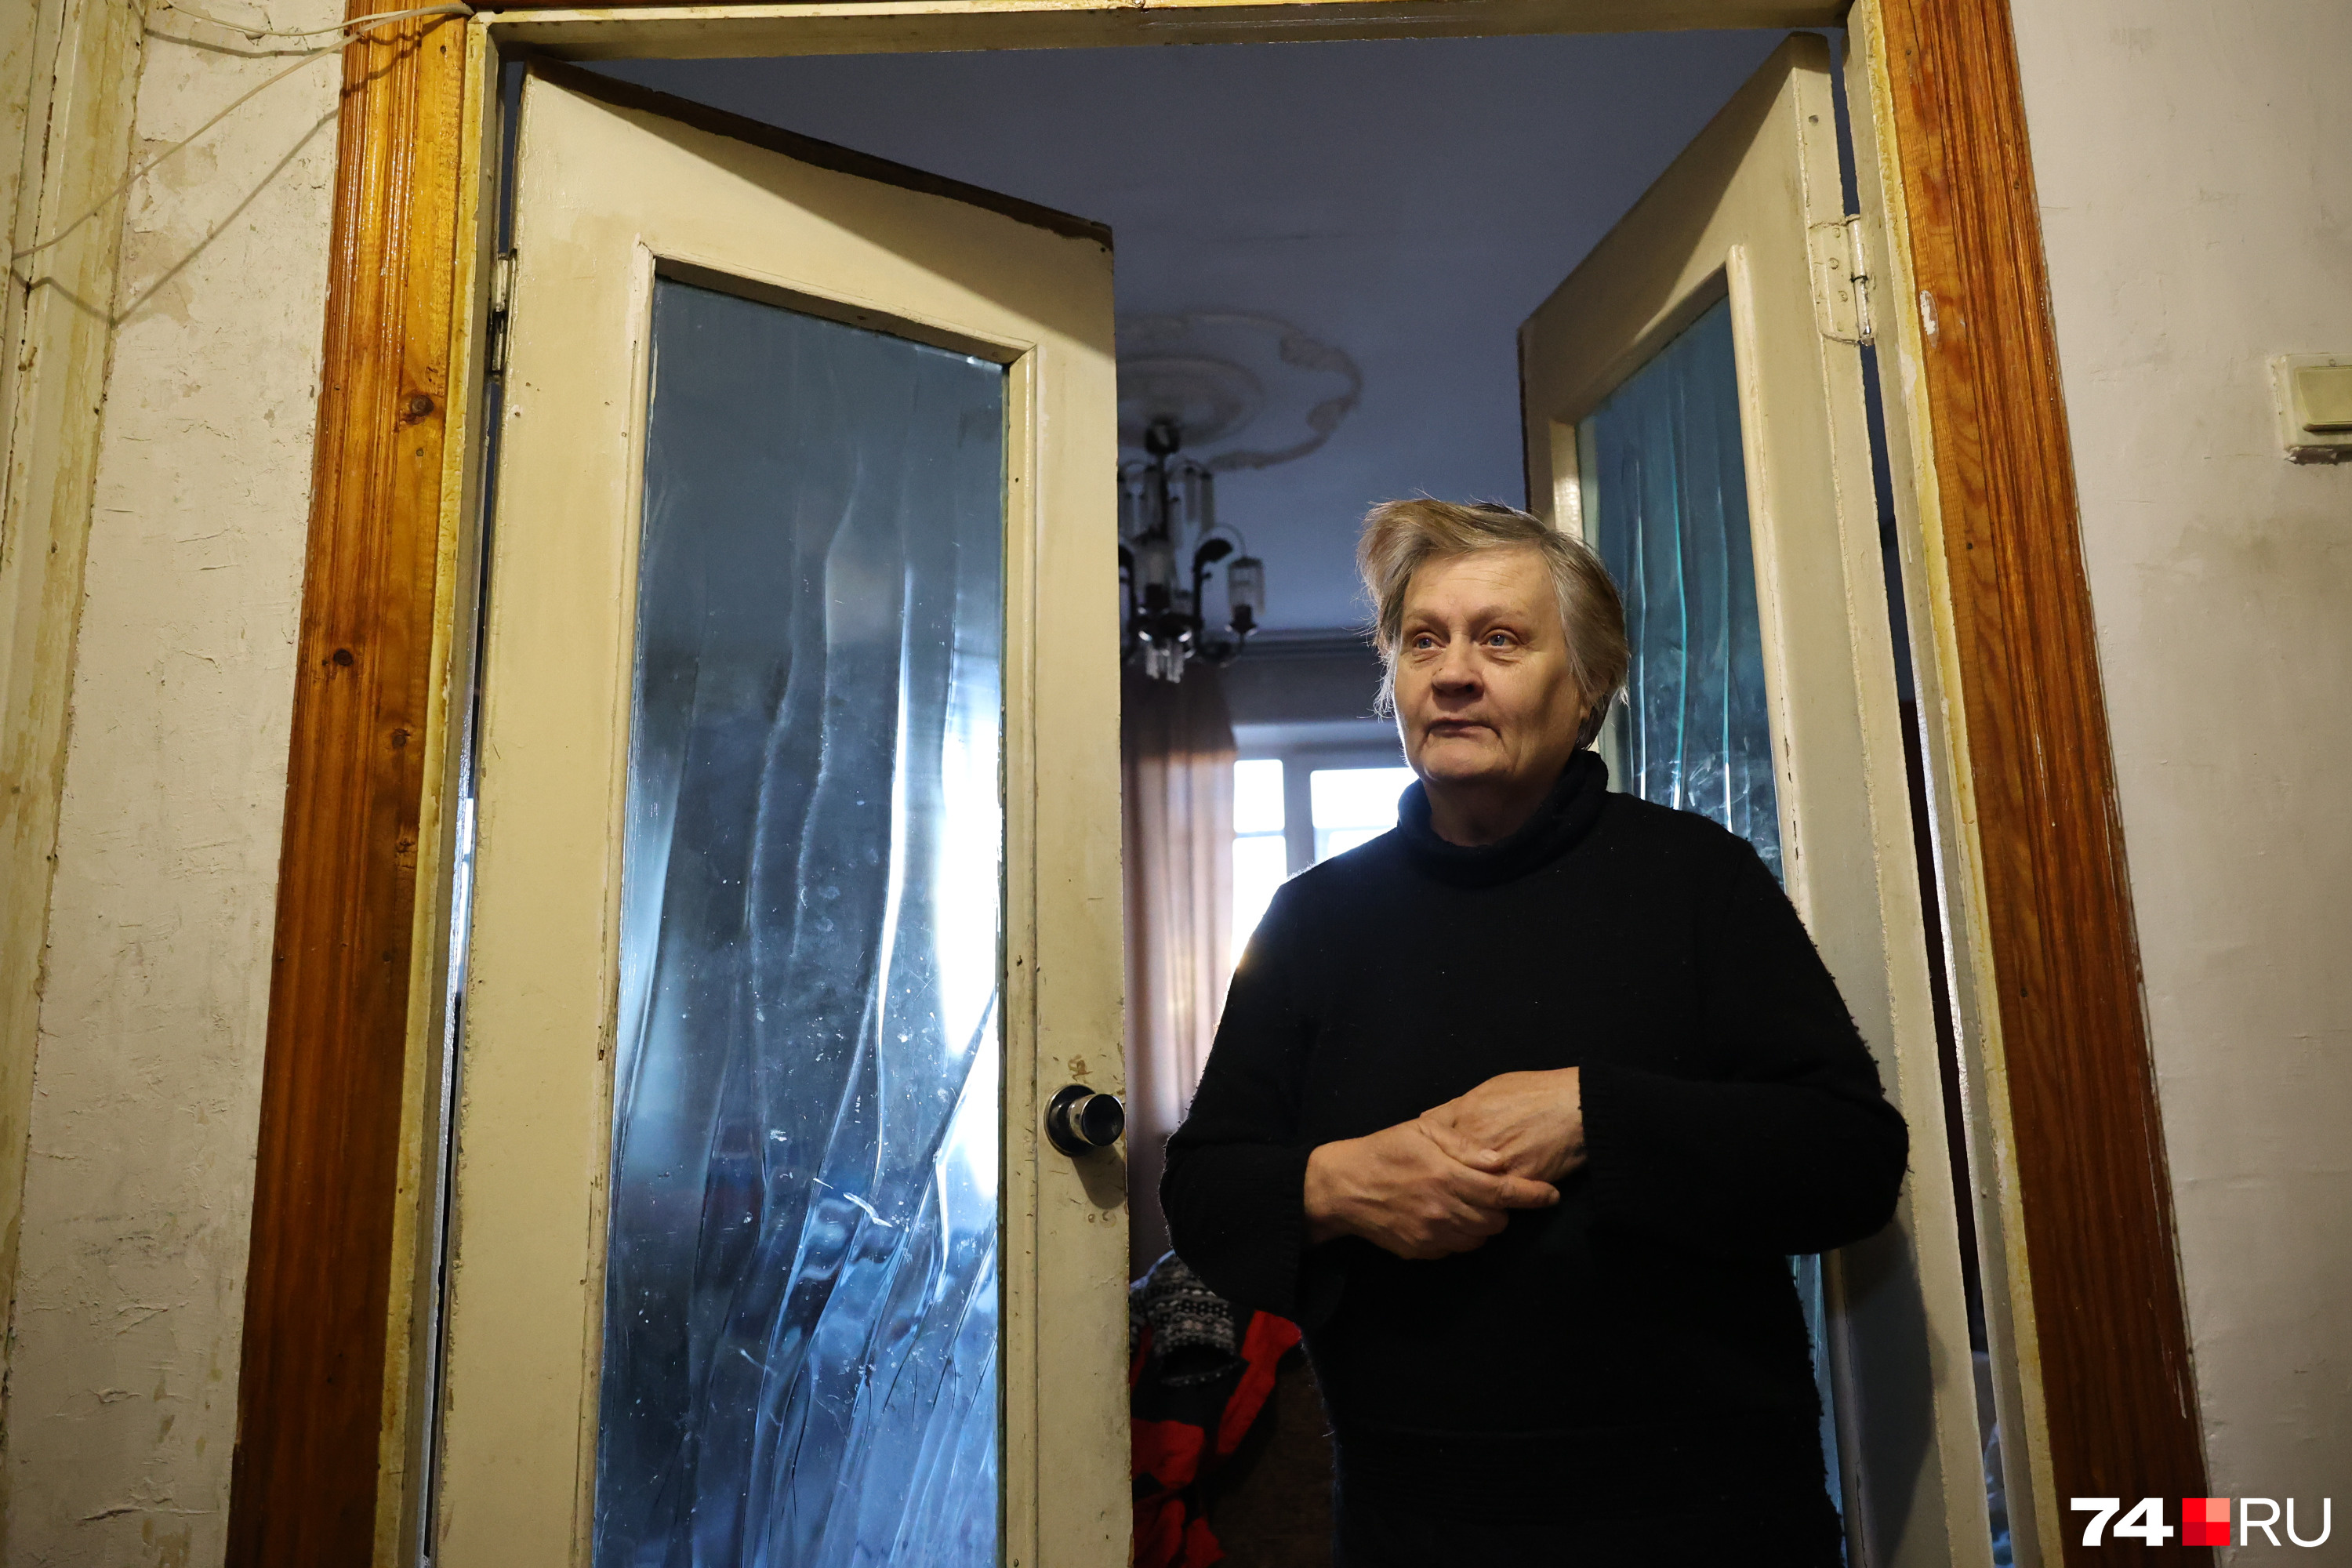 Светлану Борисовну начала топить соседка сверху, после чего коммунальщики перекрыли весь стояк — отрезали жителей снизу и сверху от горячей воды